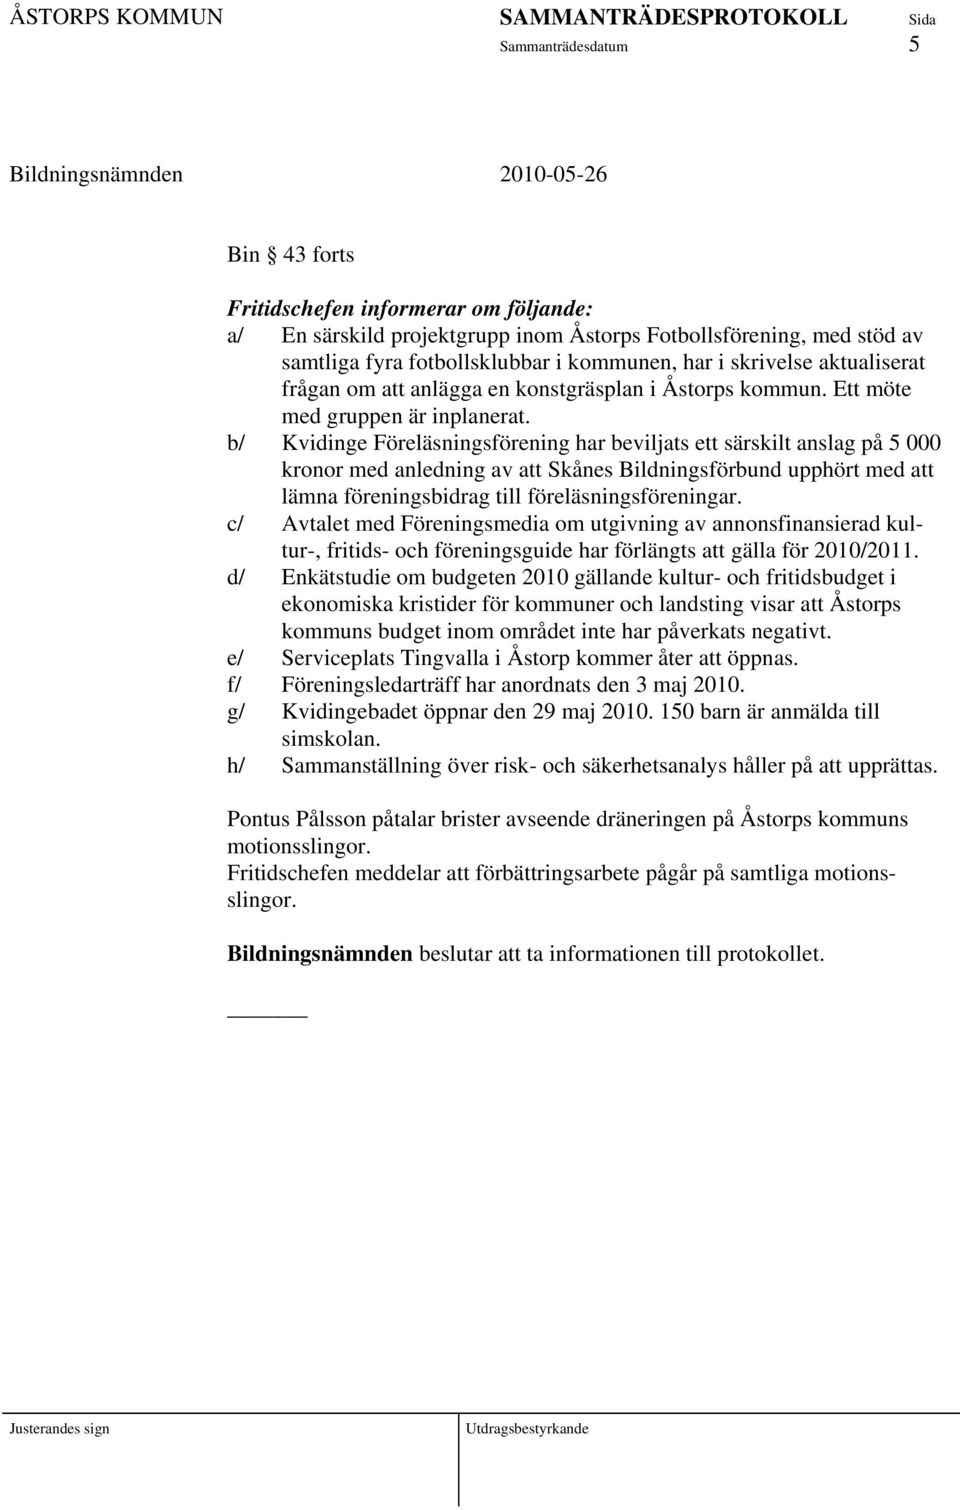 b/ Kvidinge Föreläsningsförening har beviljats ett särskilt anslag på 5 000 kronor med anledning av att Skånes Bildningsförbund upphört med att lämna föreningsbidrag till föreläsningsföreningar.